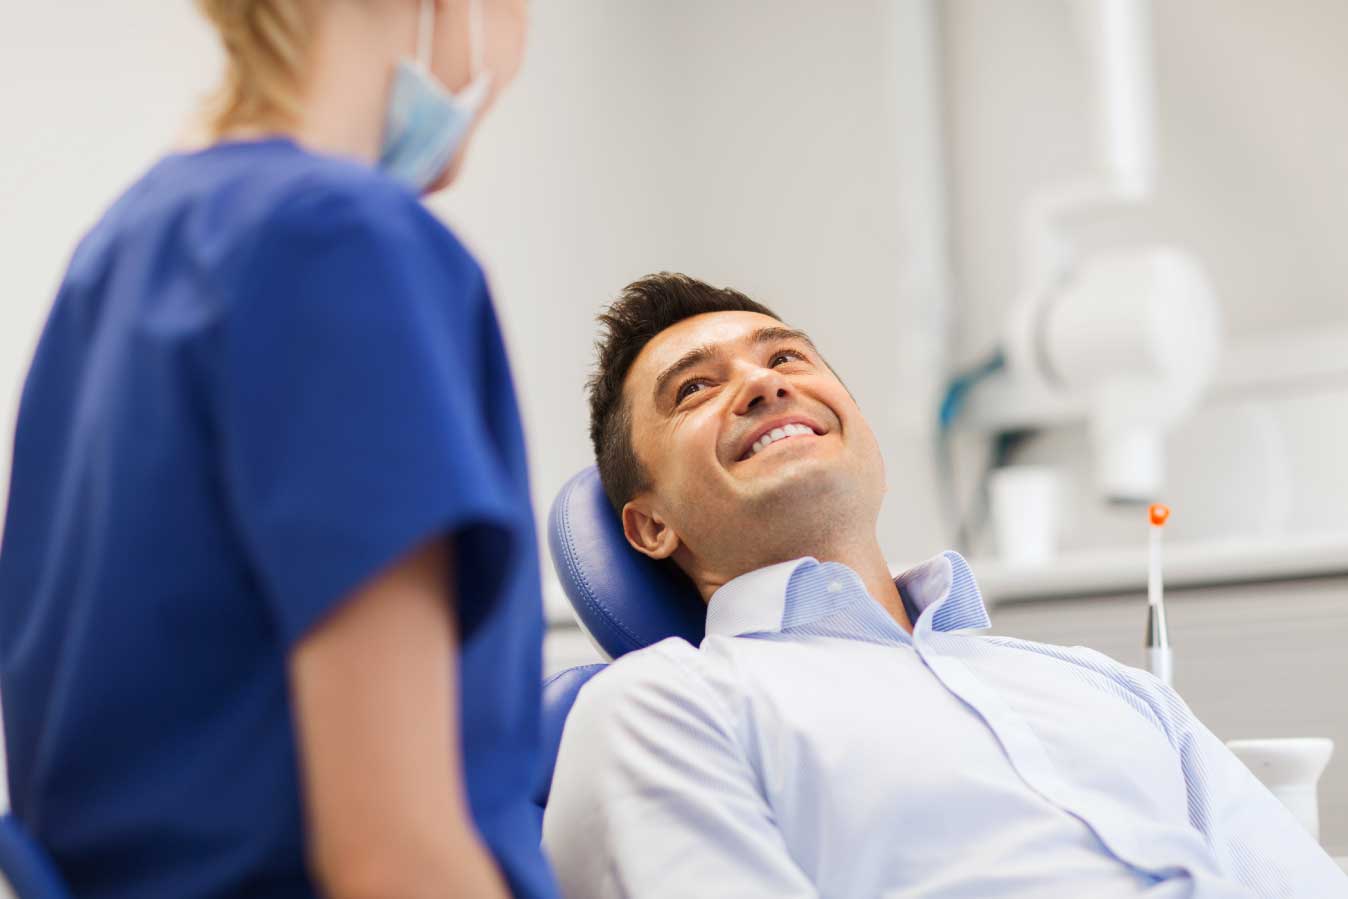 Paura del dentista: qualche suggerimento per superarla